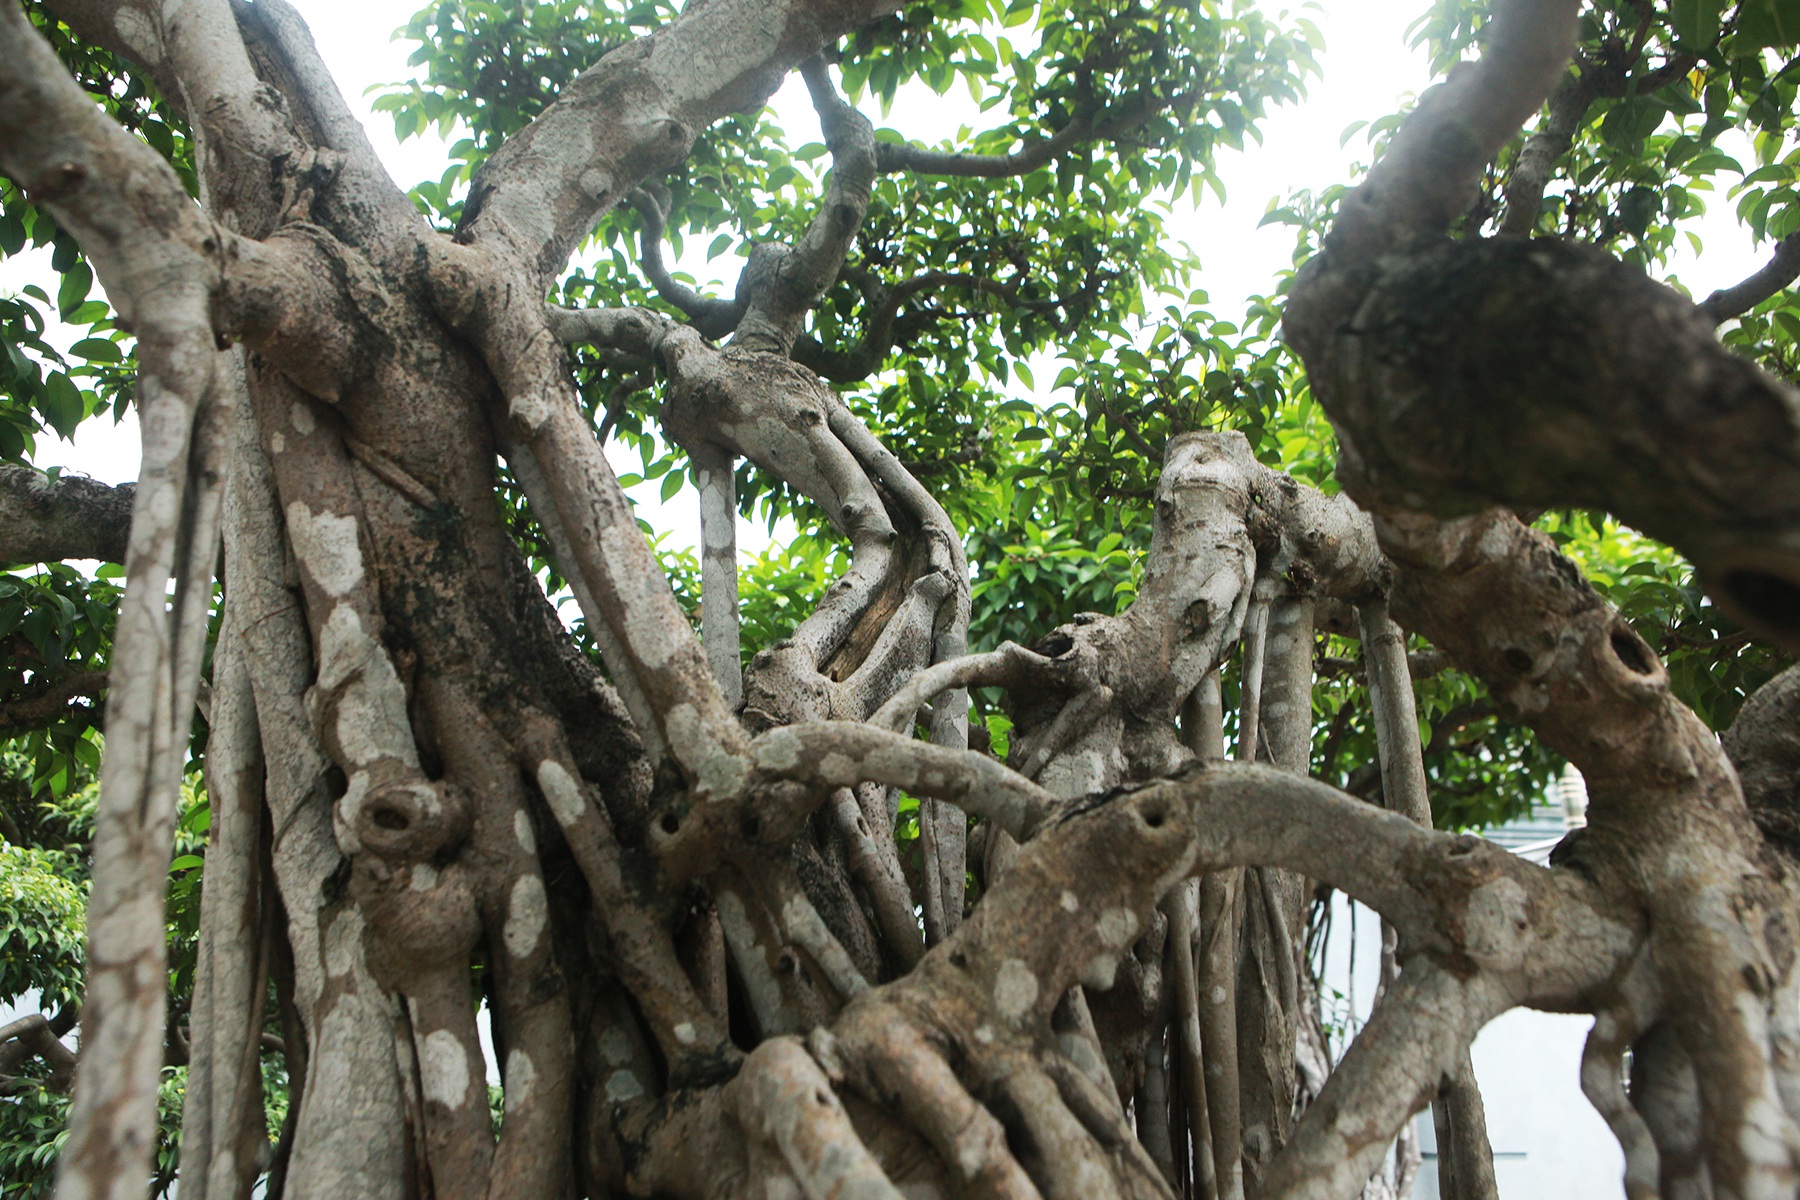 Sanh cổ “Ngũ long tranh châu” mua từ năm 1996 với giá 100 cây vàng - 7